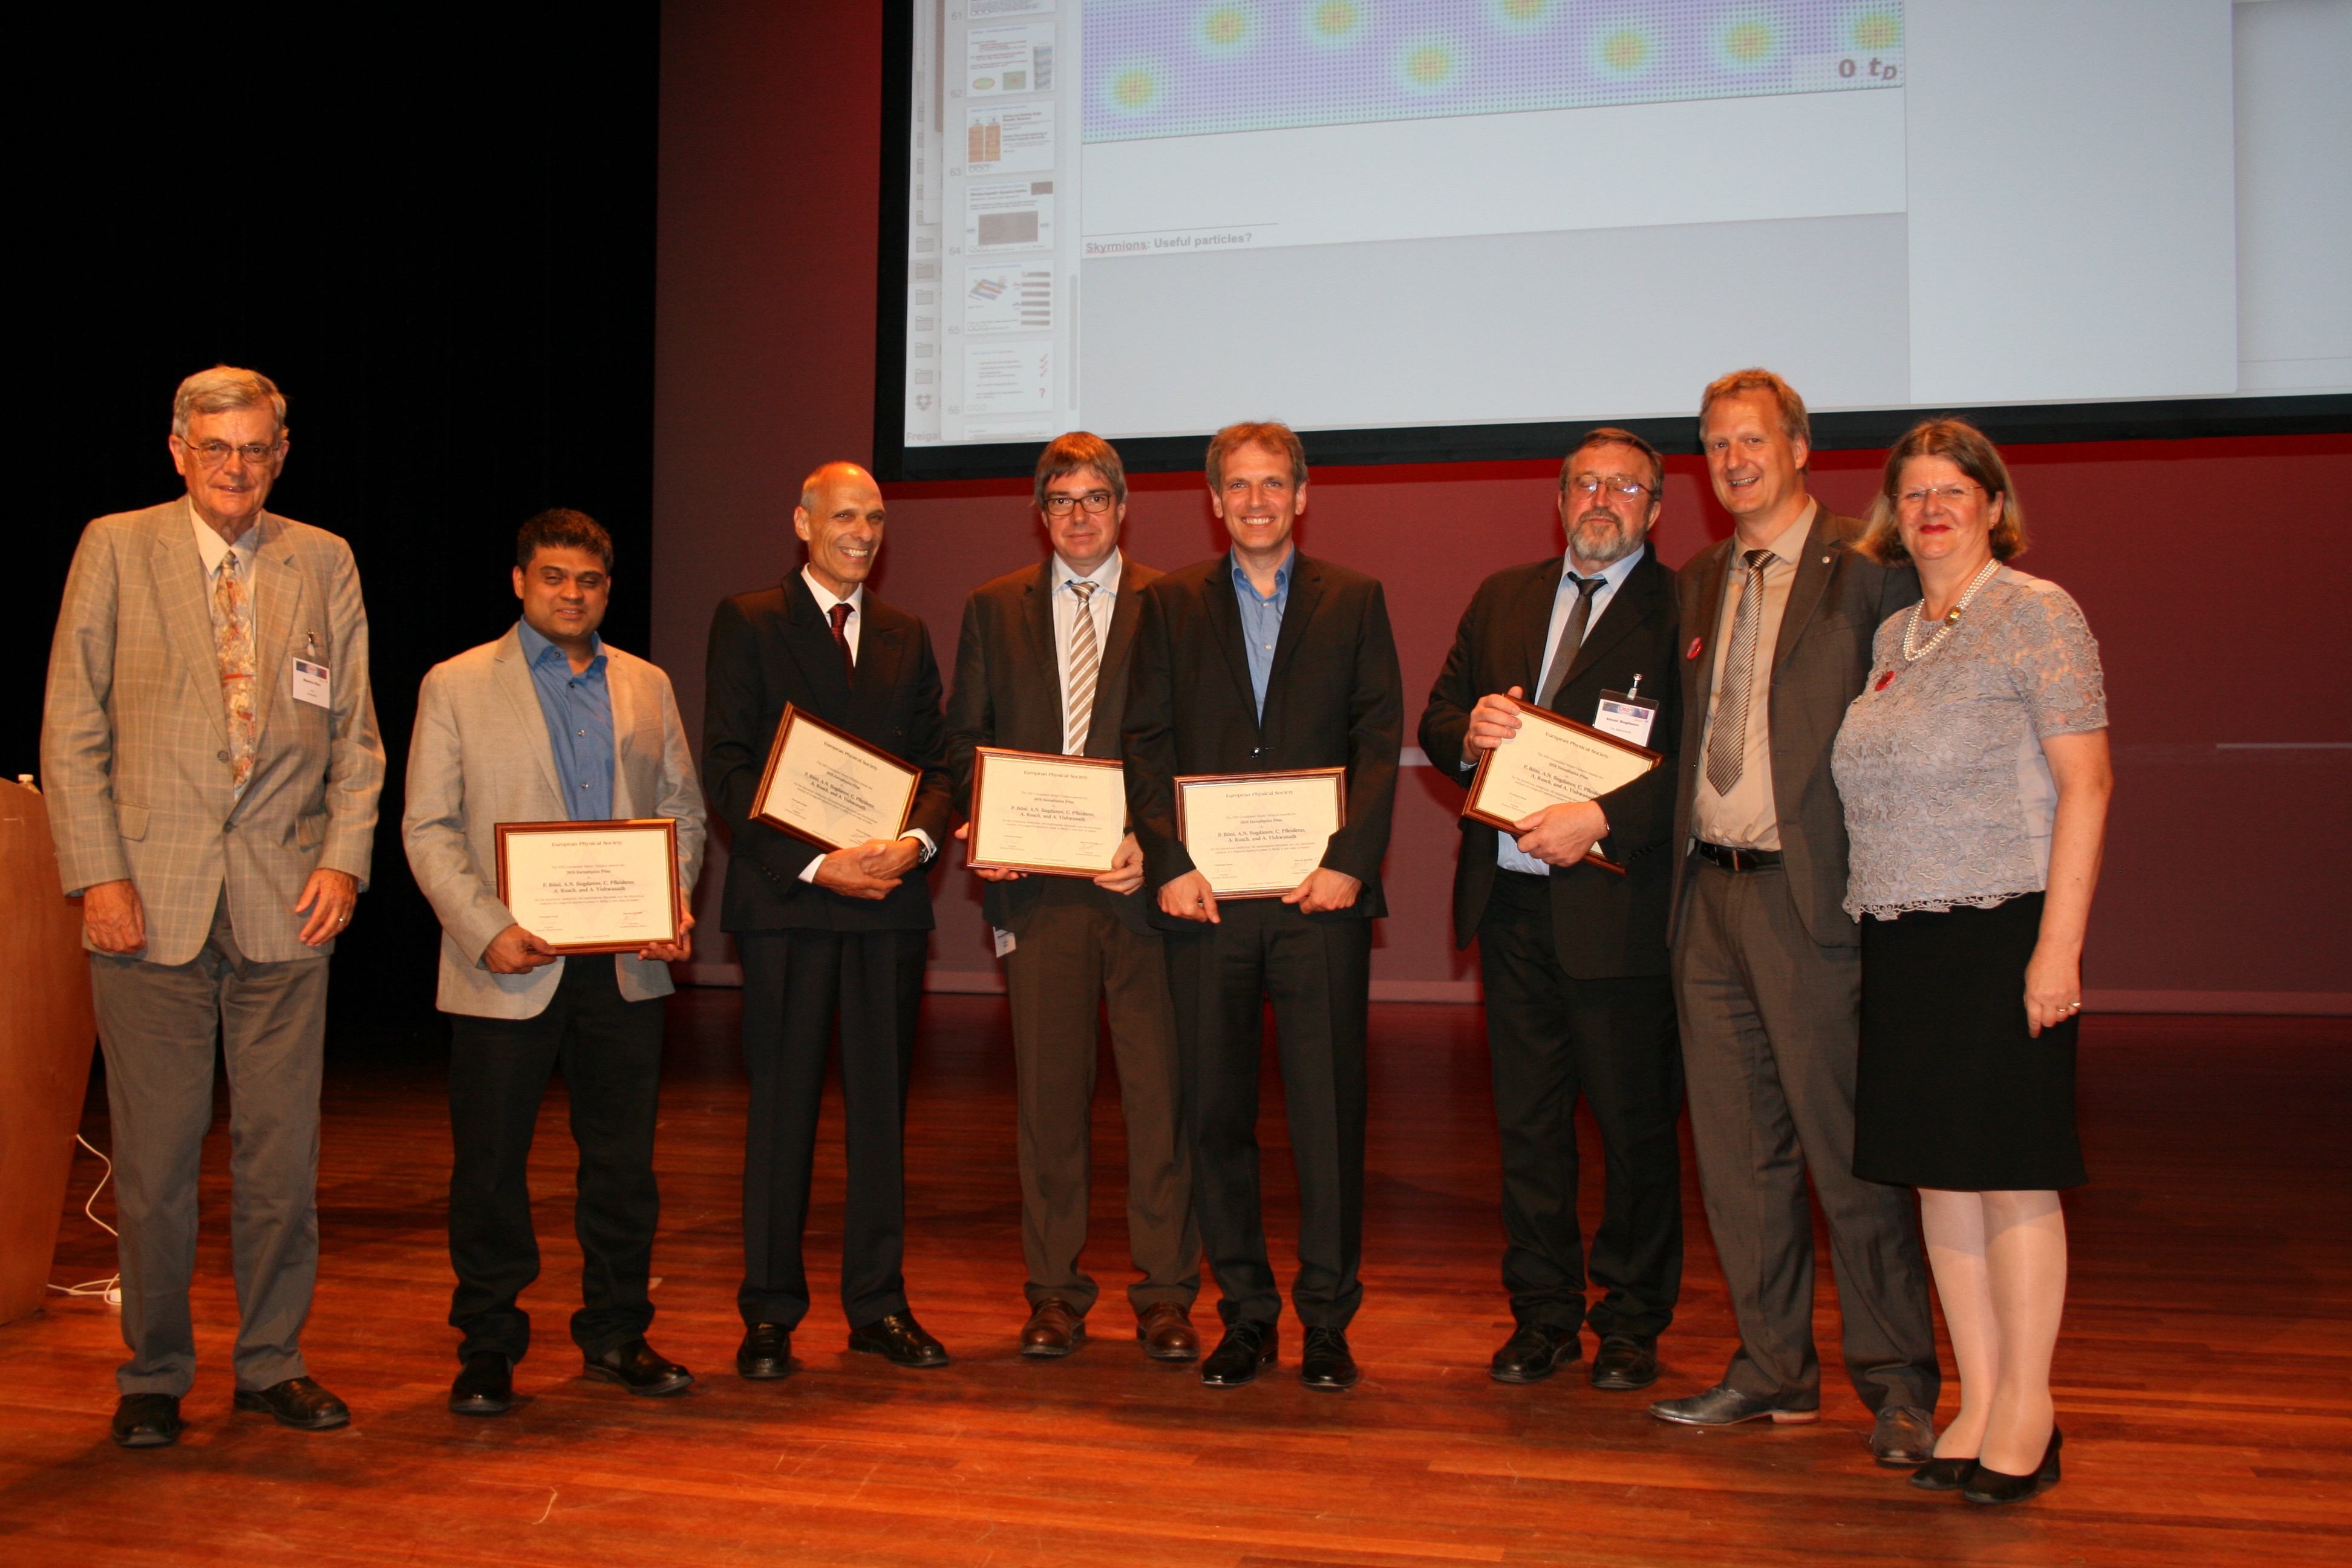 The 2016 Europhysics prize laureates